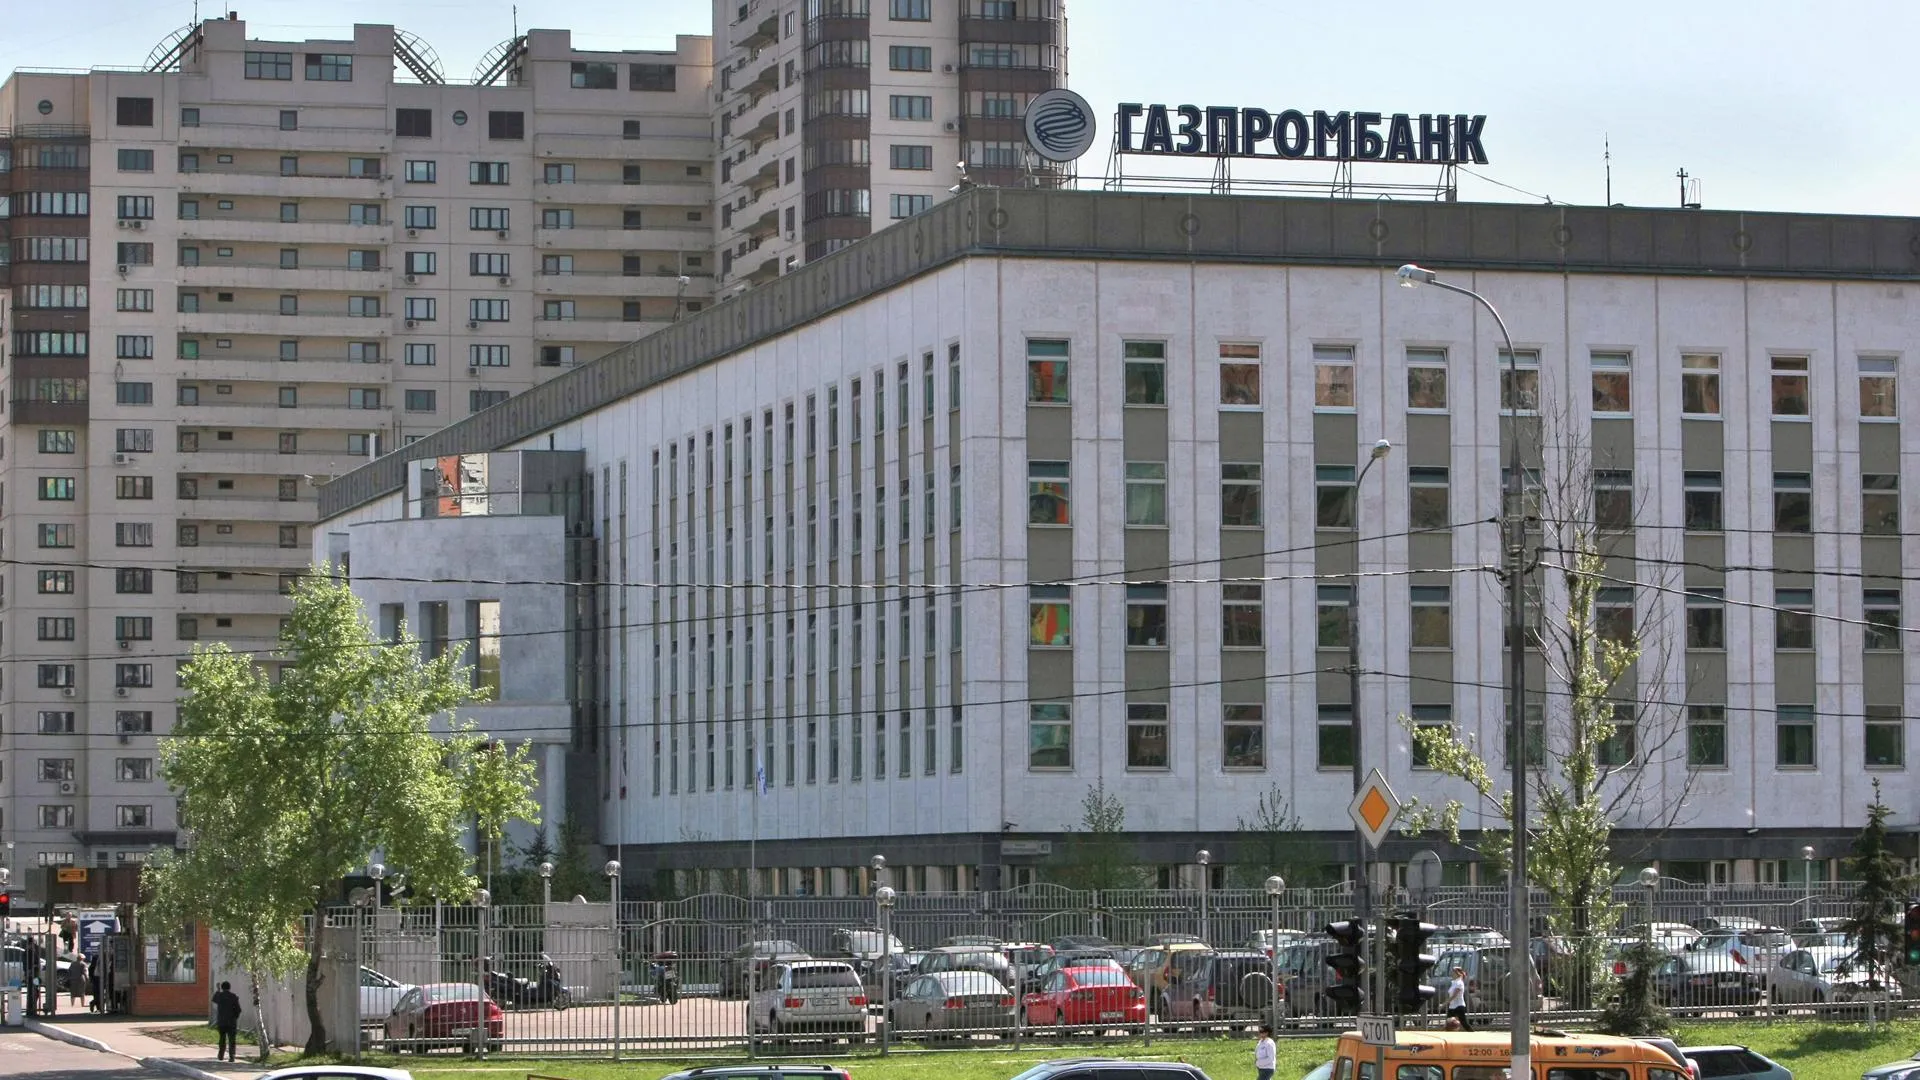 Решение по жалобе шофера замглавы Газпромбанка огласят 25 июля